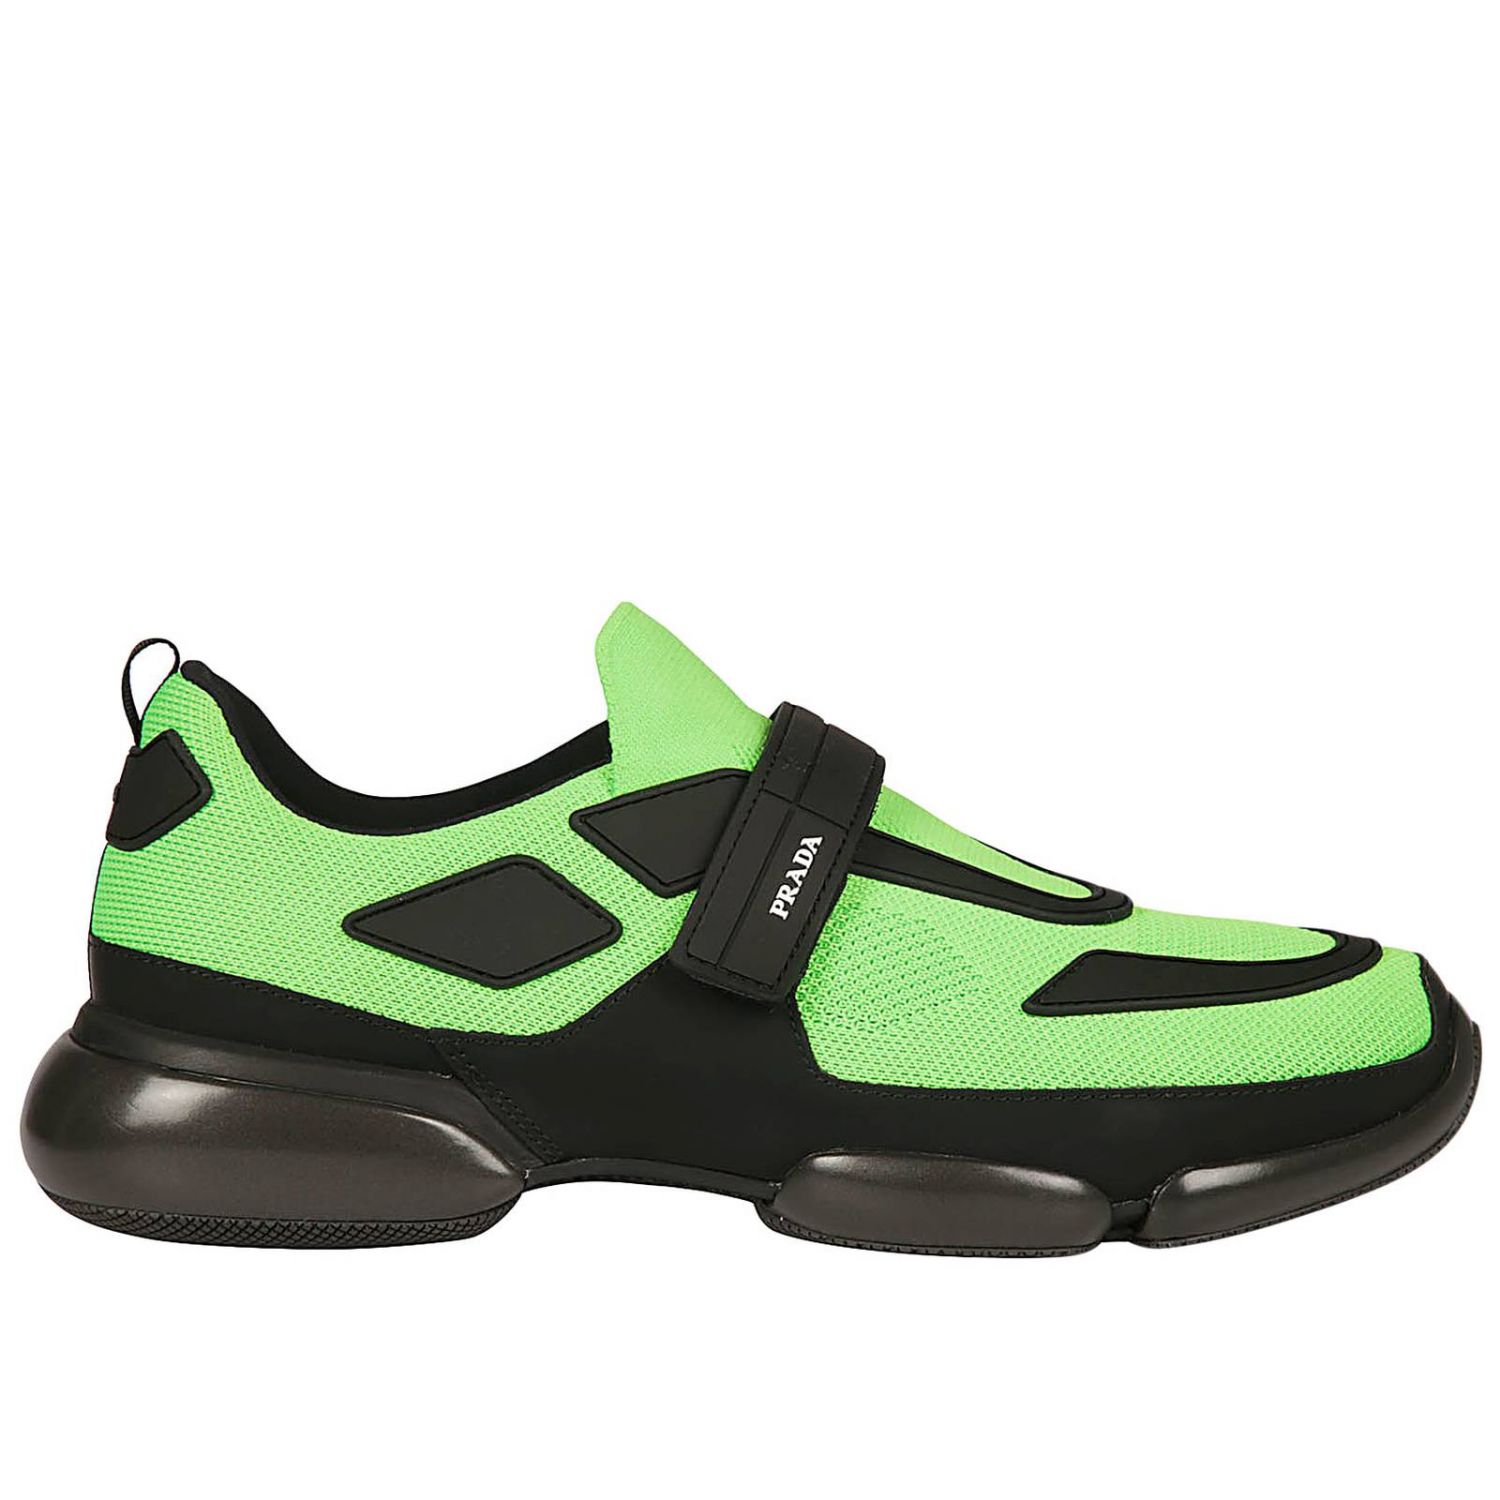 green prada sneakers